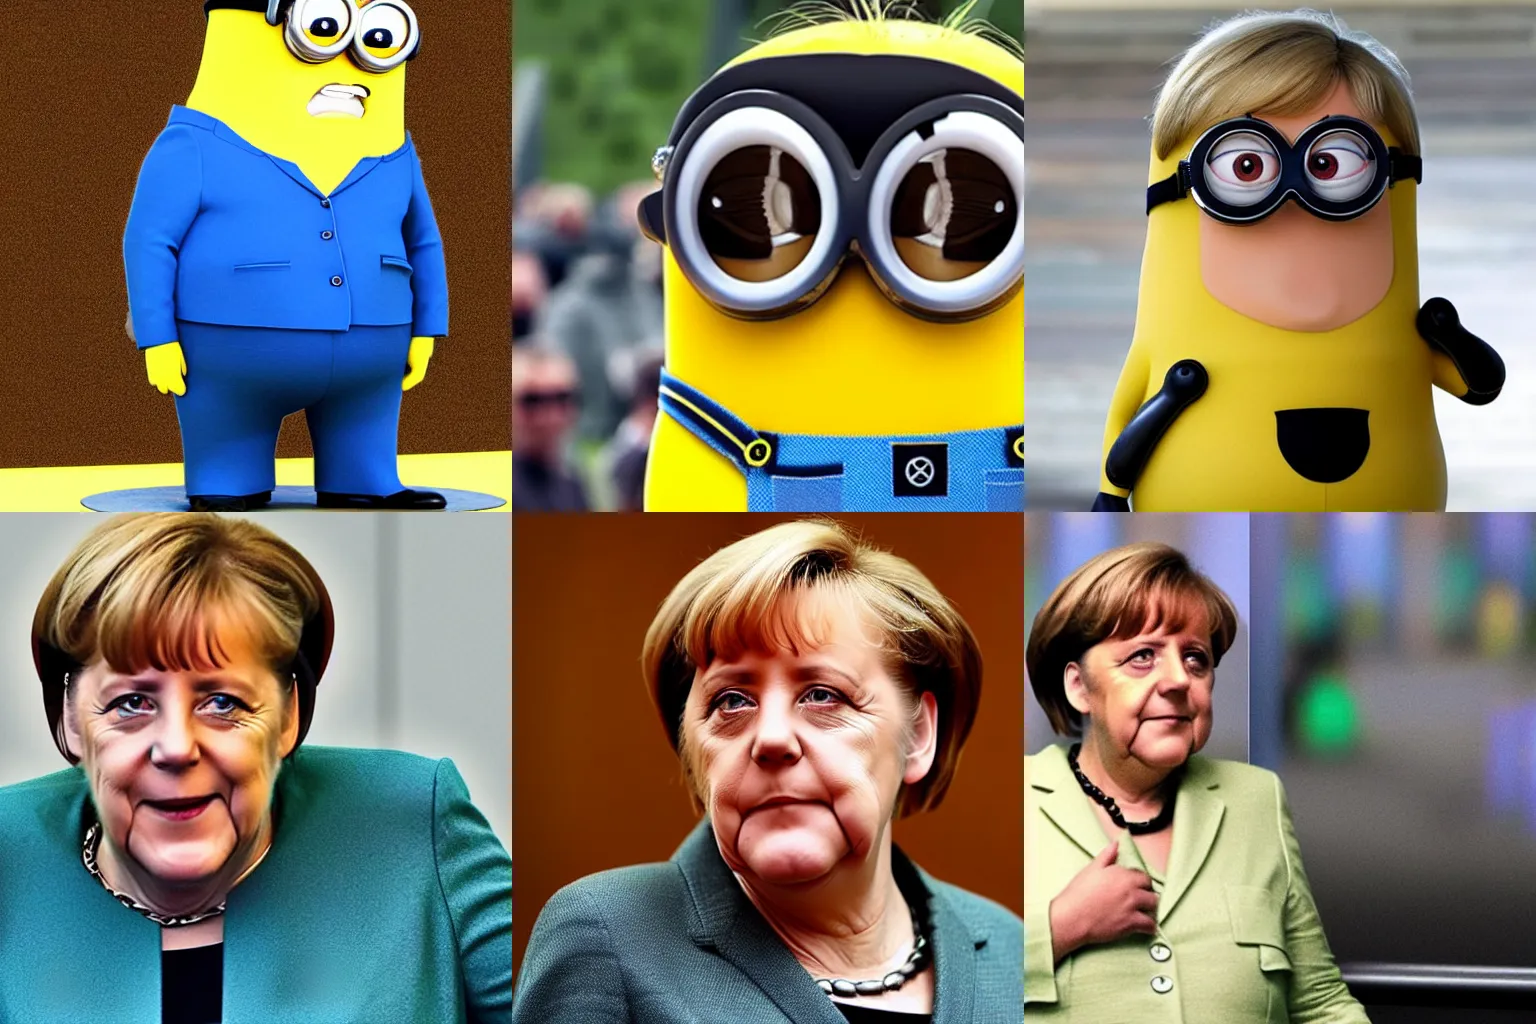 Prompt: Angela Merkel Minion